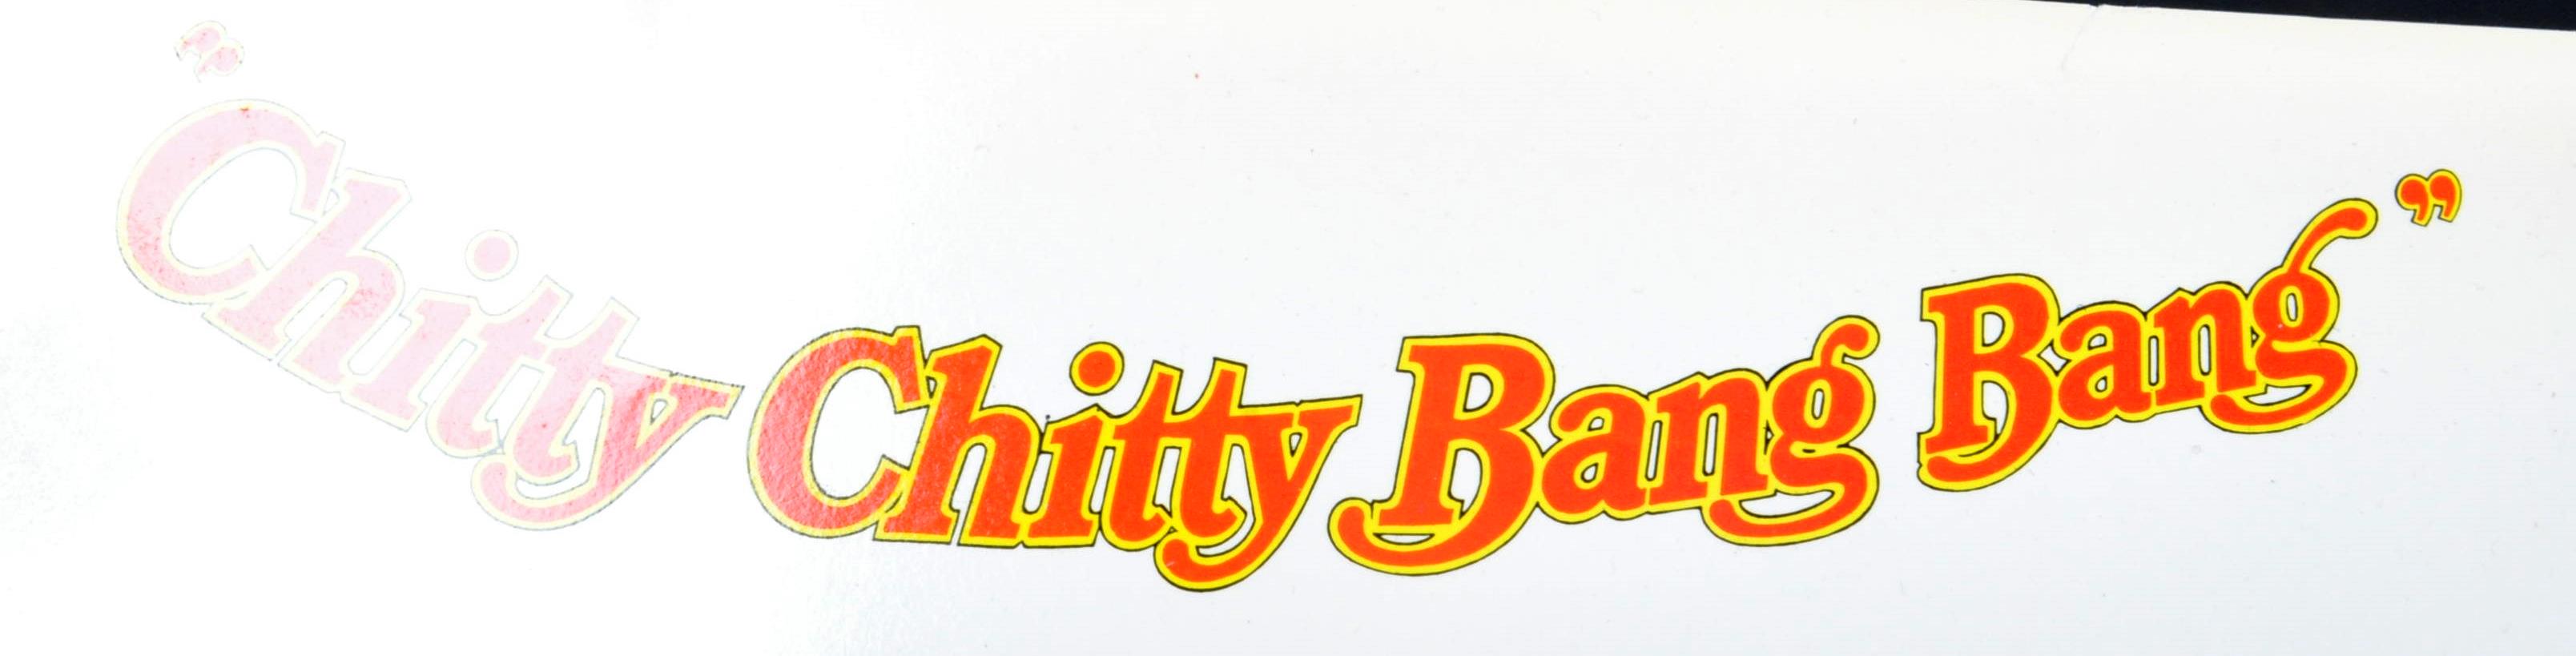 CHITTY CHITTY BANG BANG - VINTAGE CARDBOARD ARTWORK - Image 2 of 6